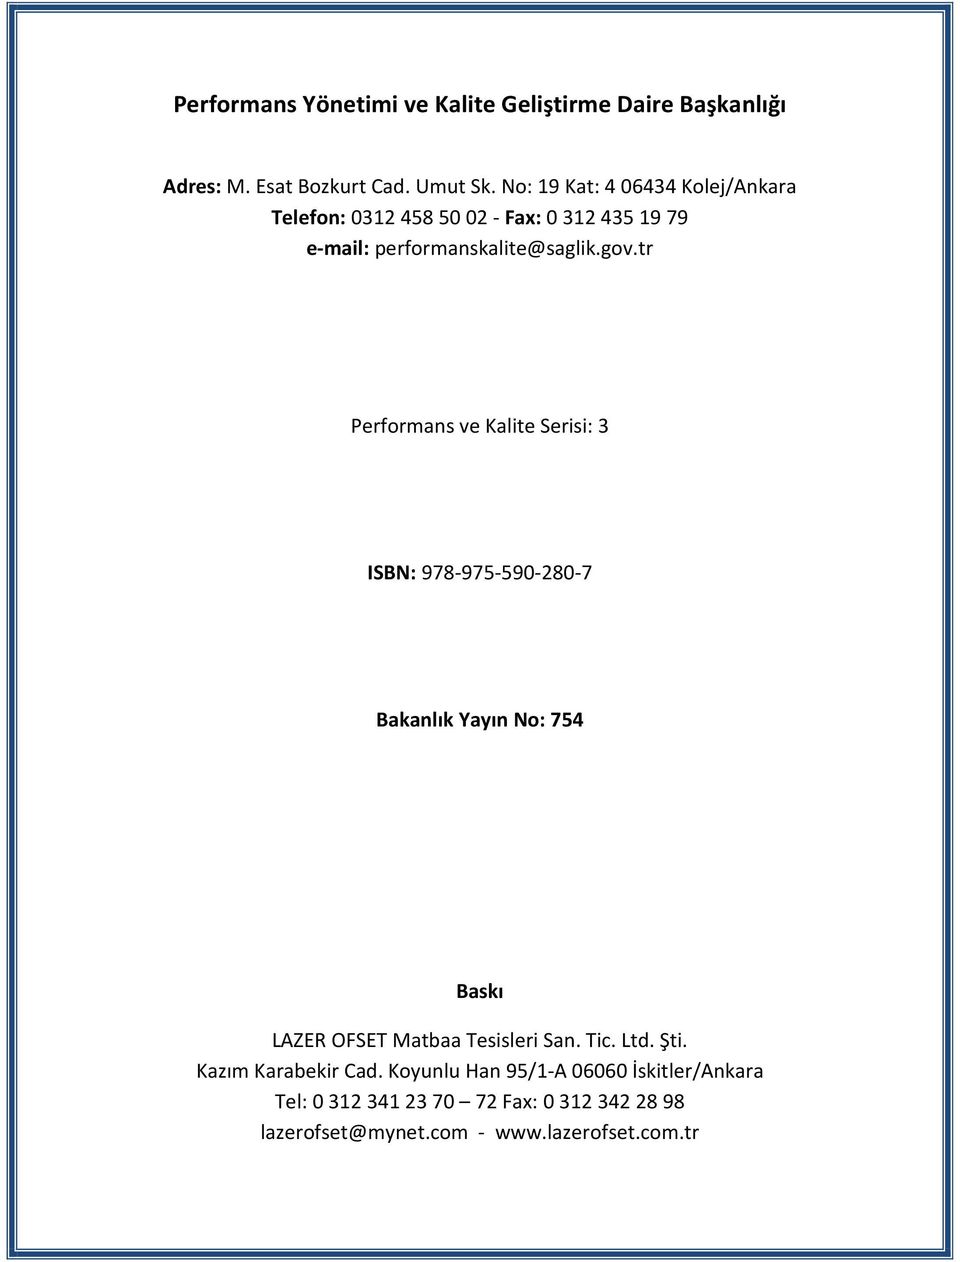 tr Performans ve Kalite Serisi: 3 ISBN: 978-975-590-280-7 Bakanlık Yayın No: 754 Baskı LAZER OFSET Matbaa Tesisleri San. Tic.